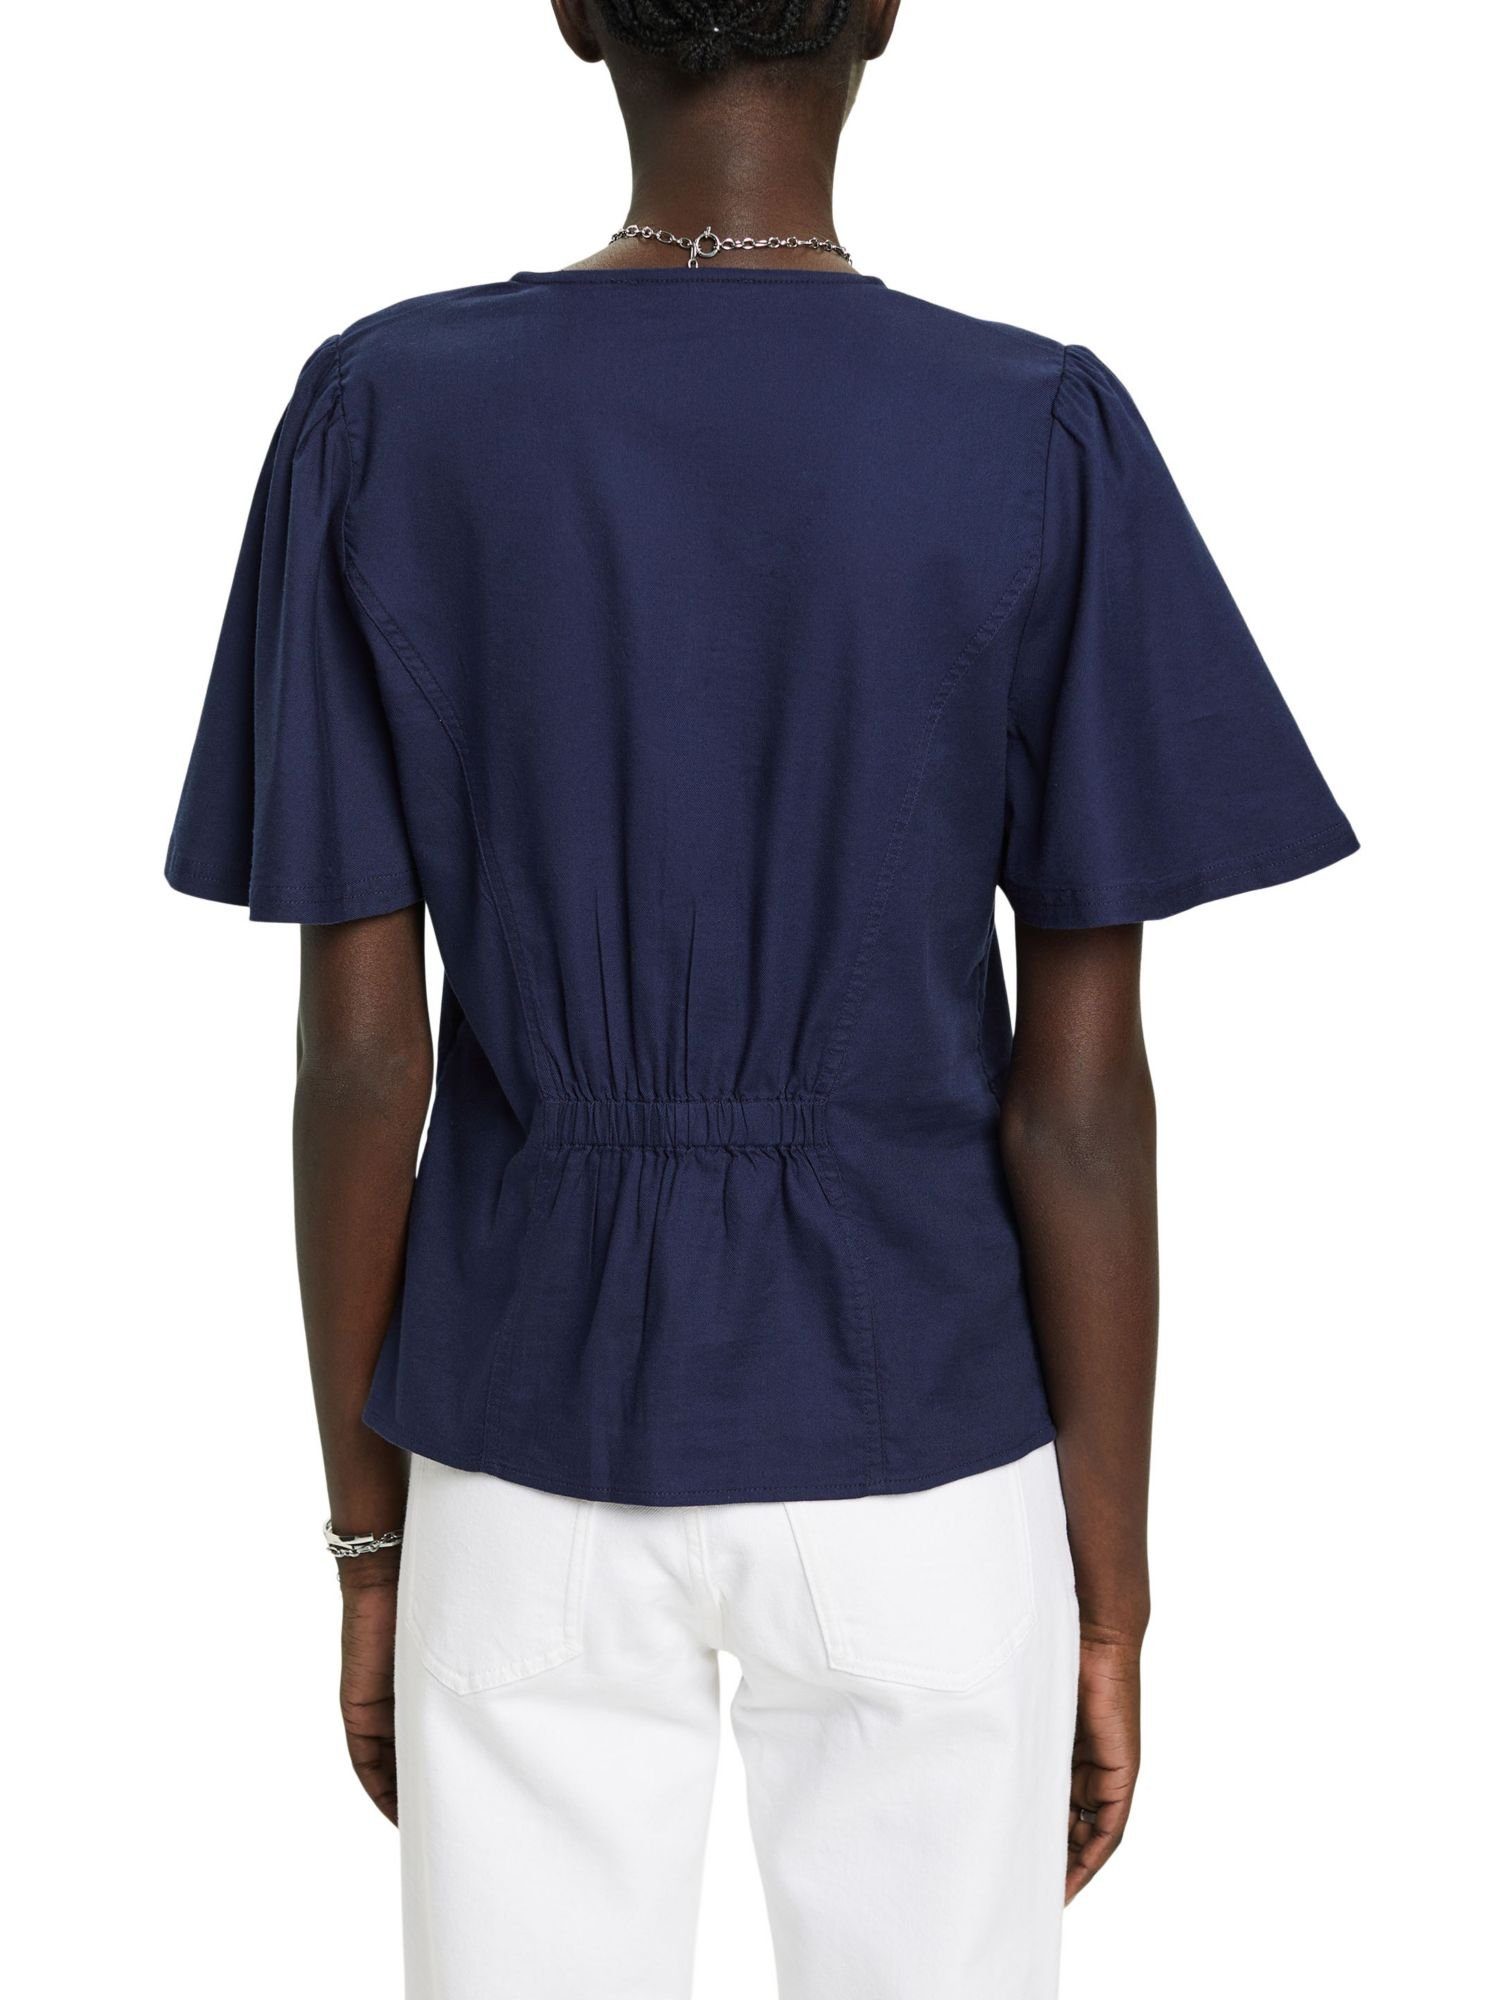 NAVY Knöpfen mit Esprit Bluse Taillierte Kurzarmbluse